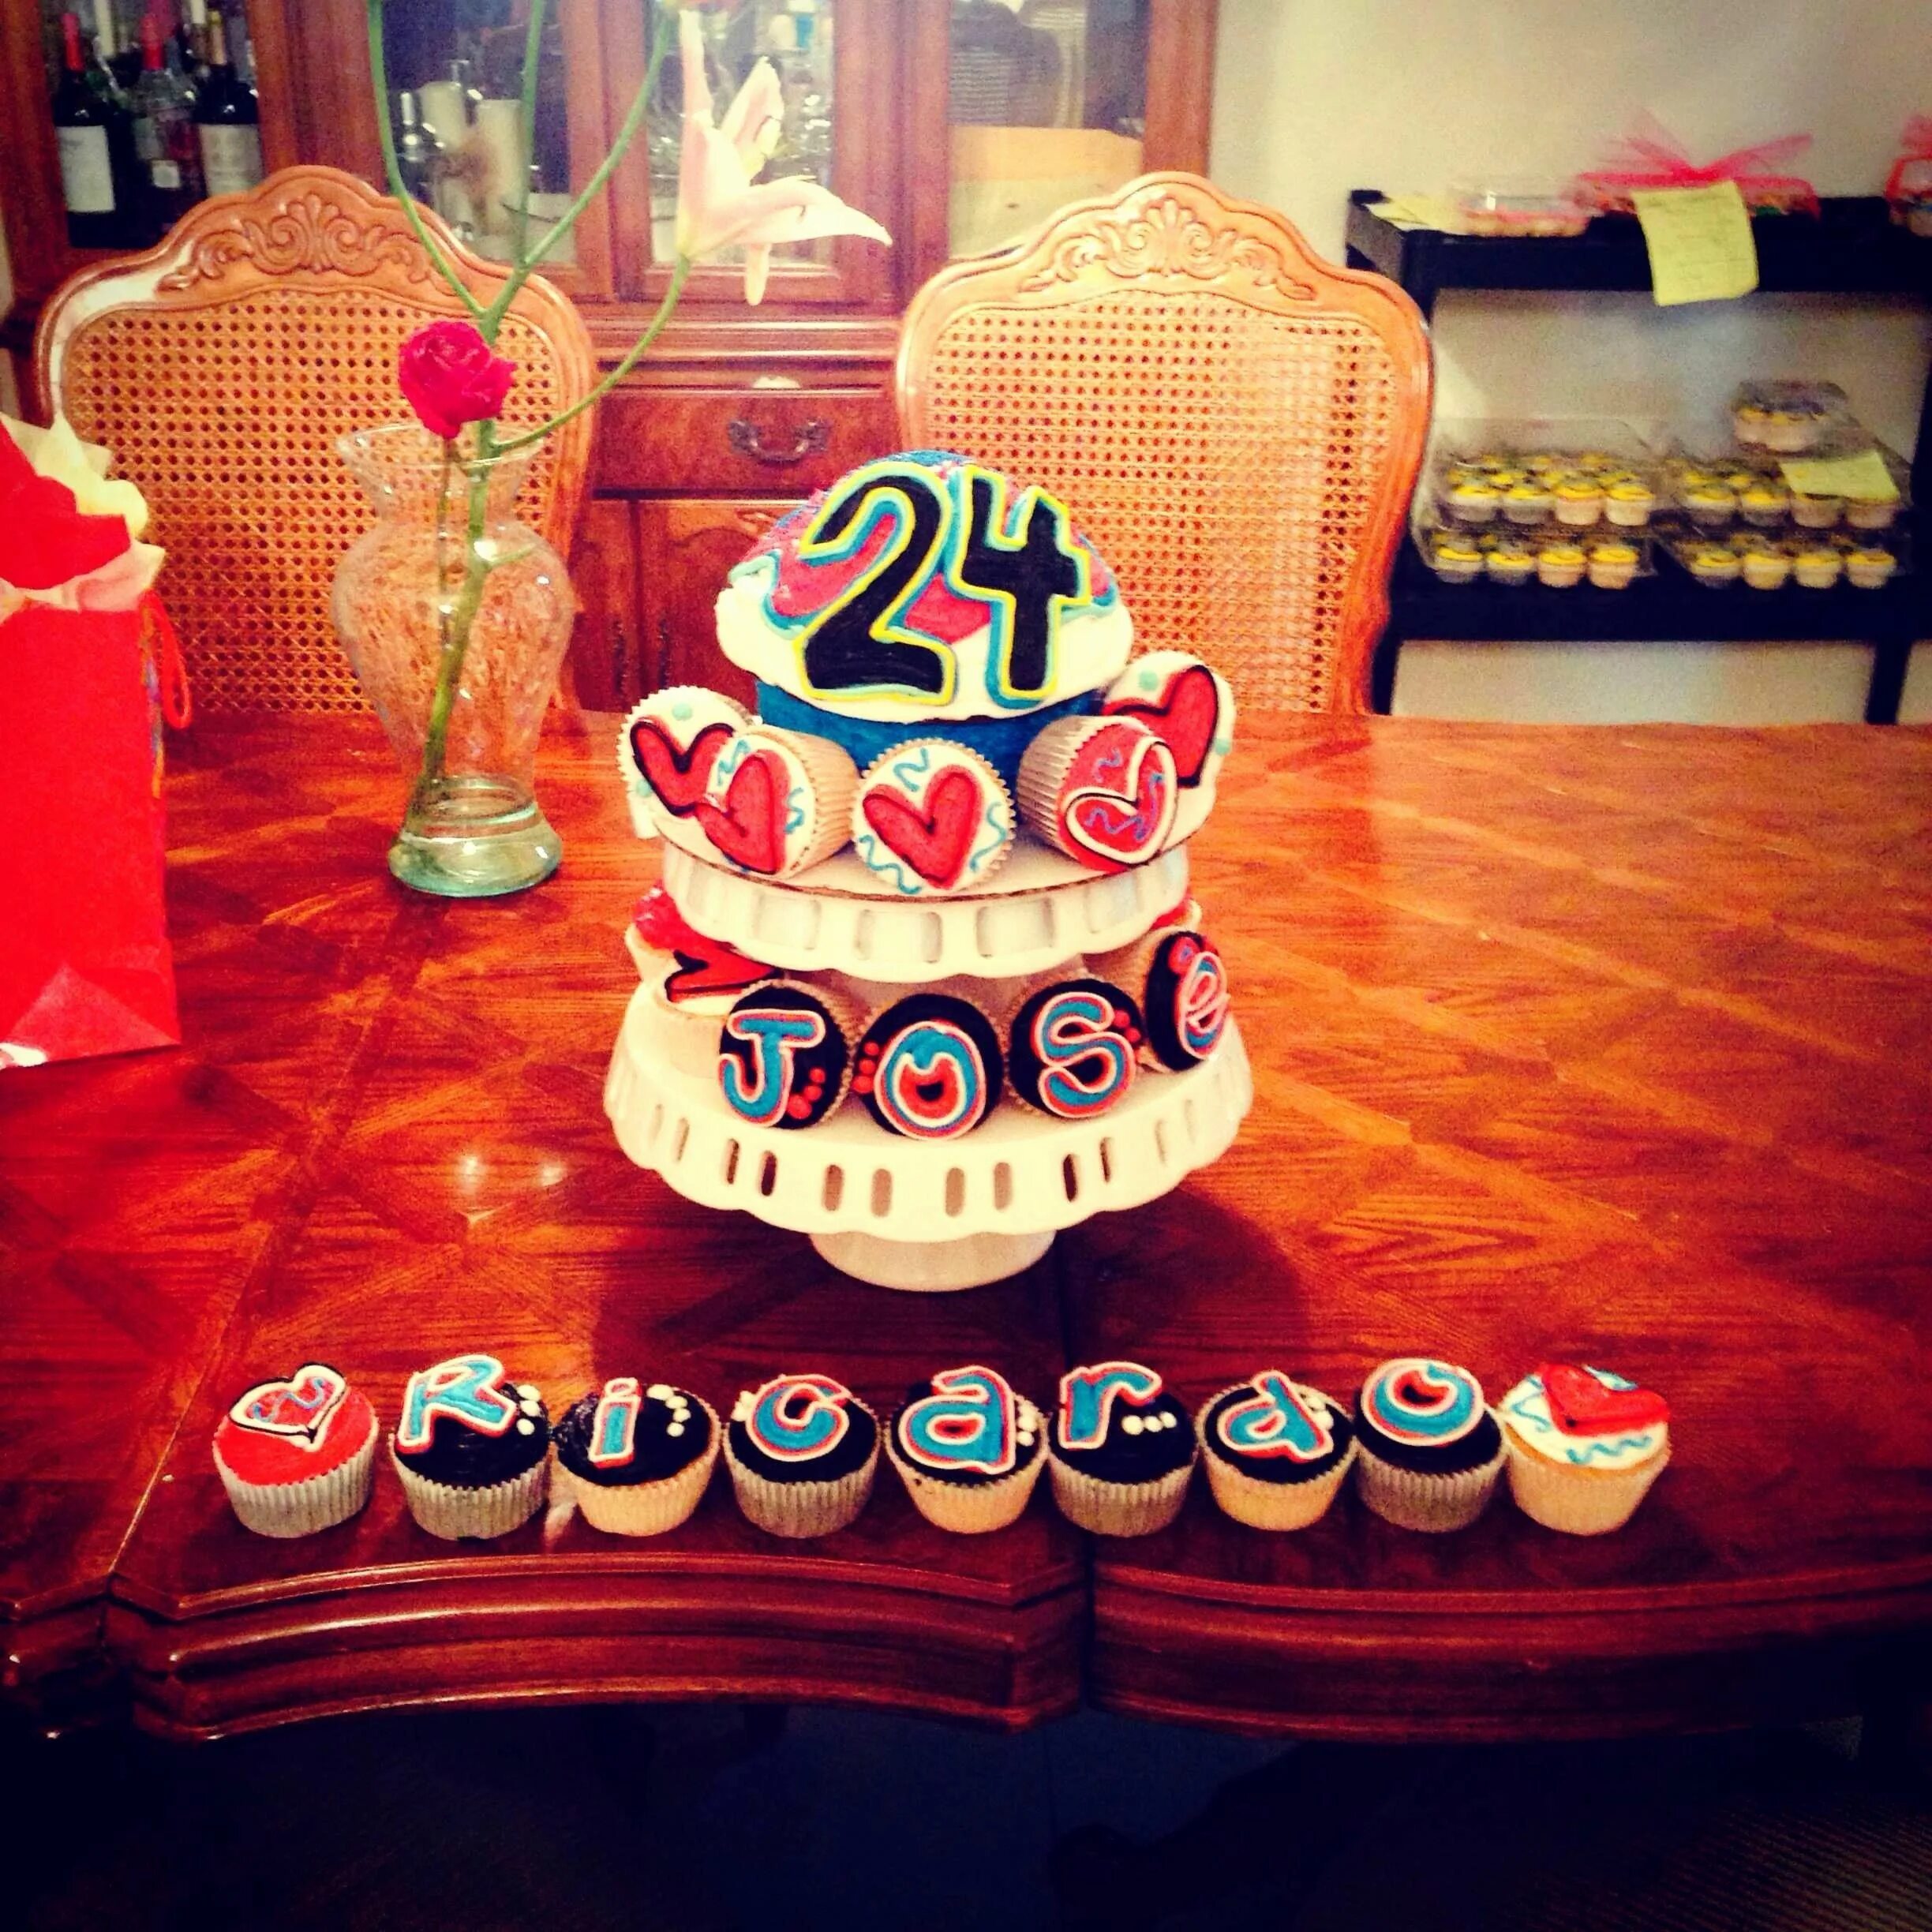 Fc 24 birthday. День рождения подарок 24 лет. С днём рождения 24 года. Торт на 24 года. Торт на день рождения 24.